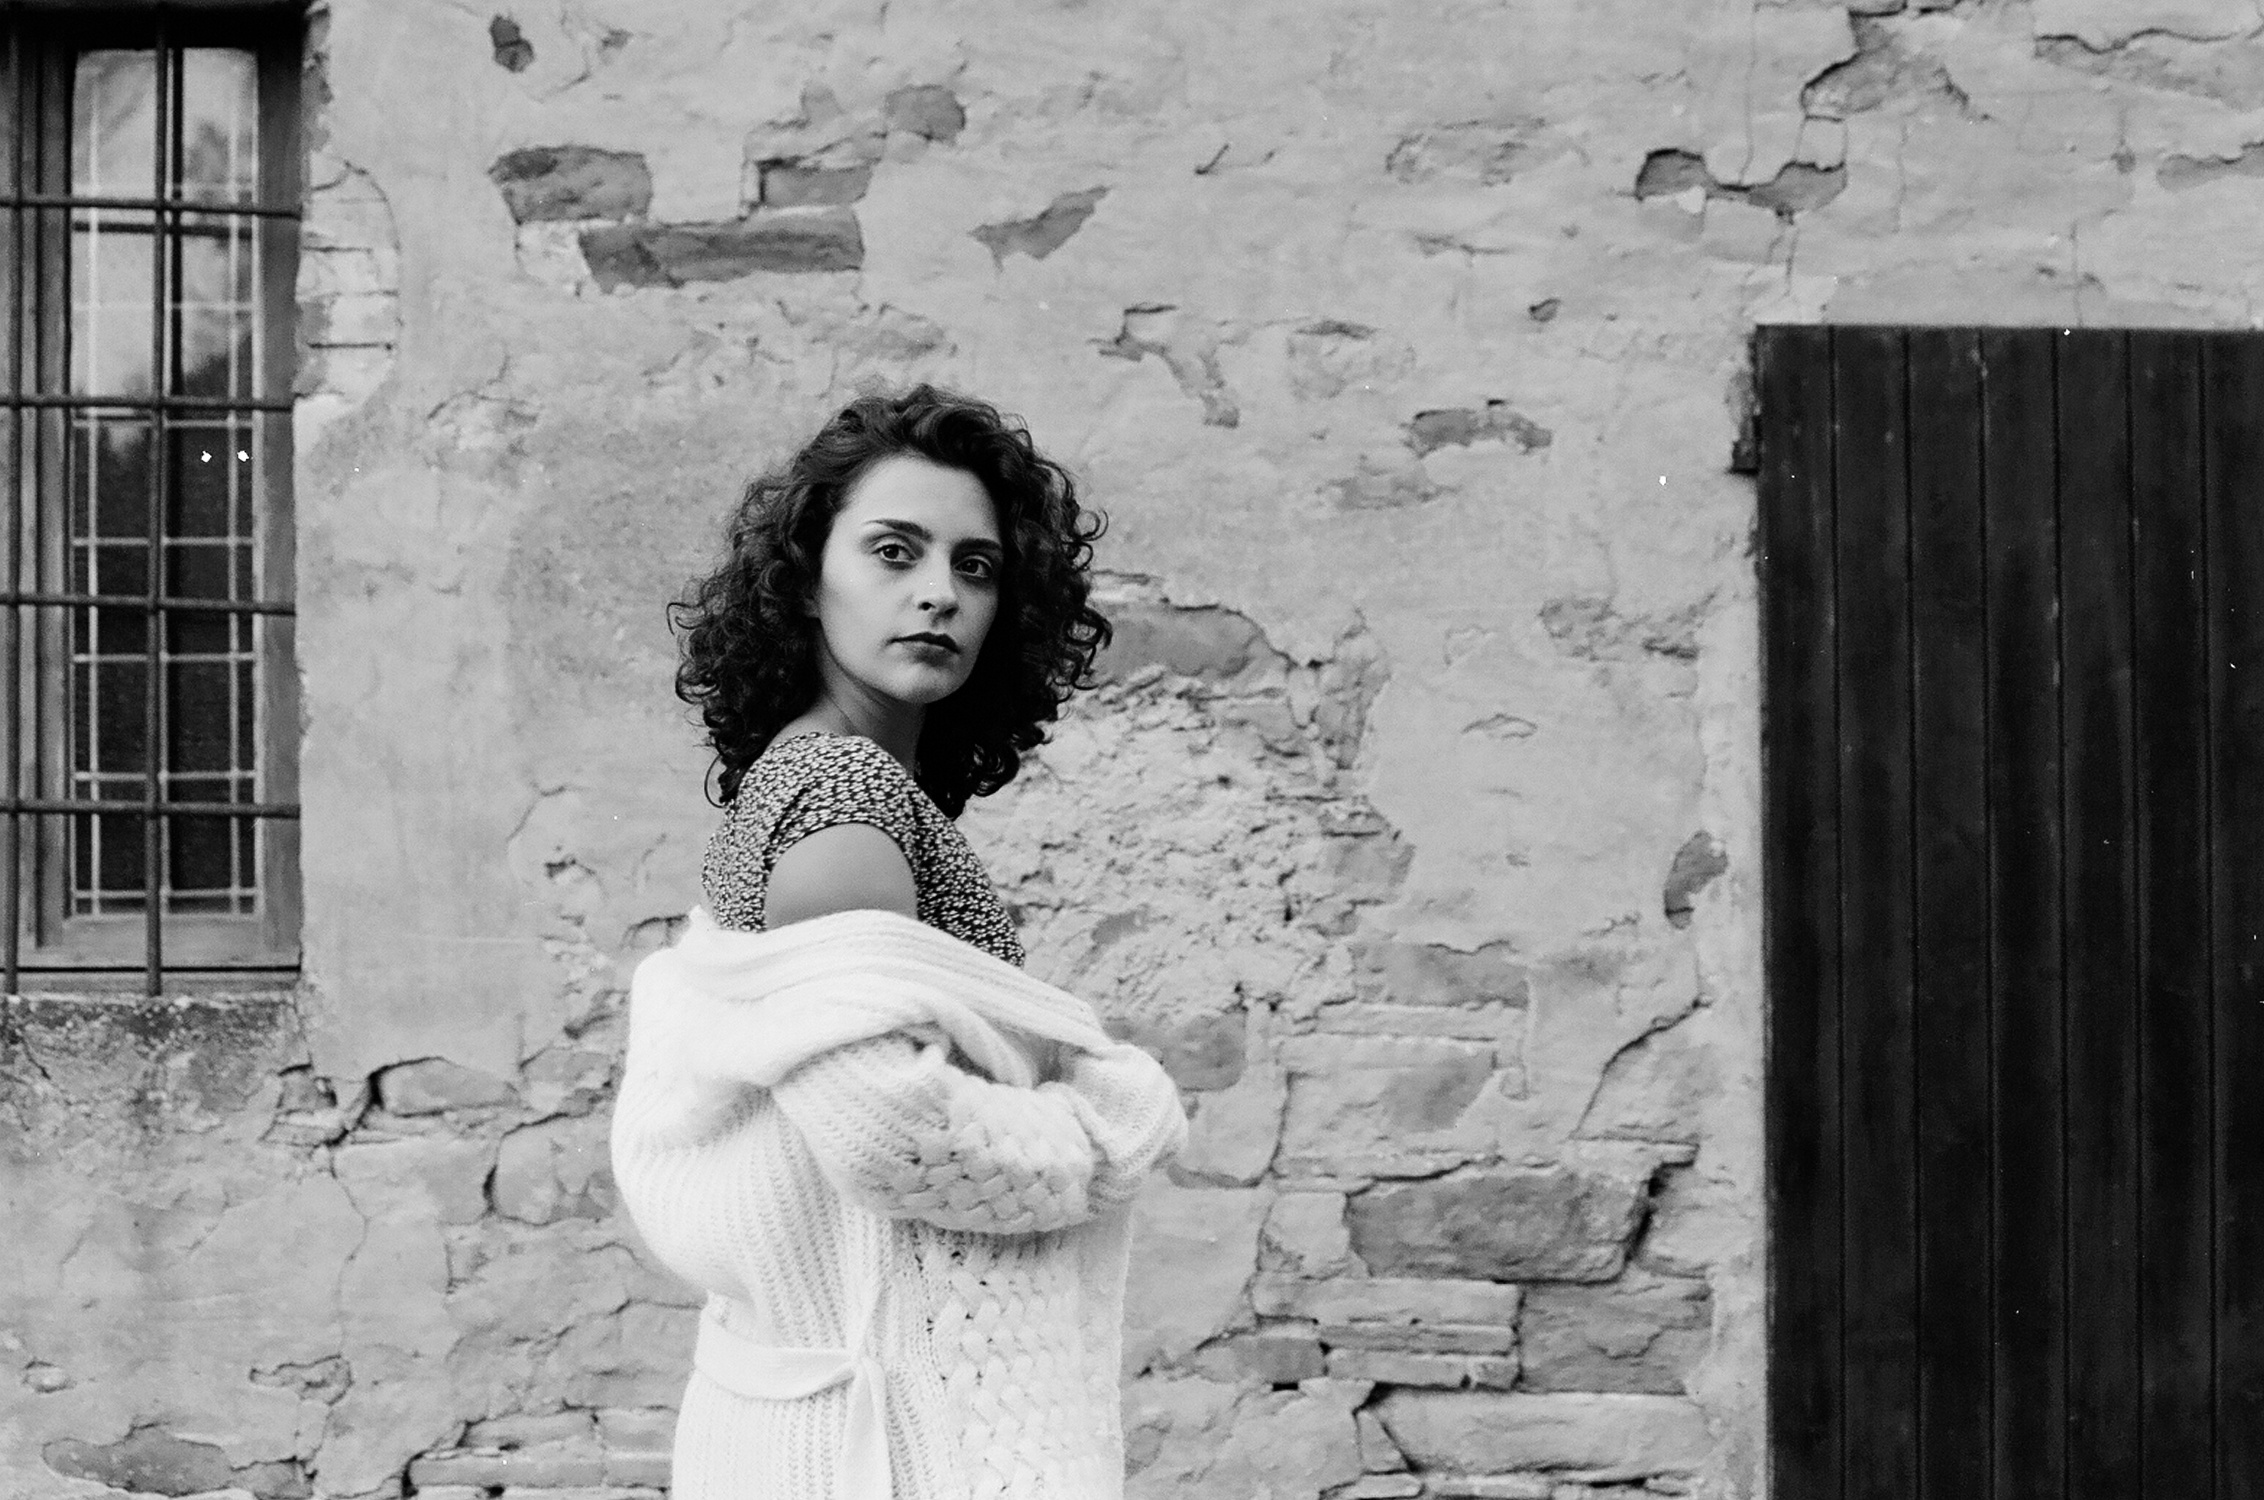 Ritratto in bianco e nero di ragazza con vestito a fiori e cardigan, fotografia analogica e vintage